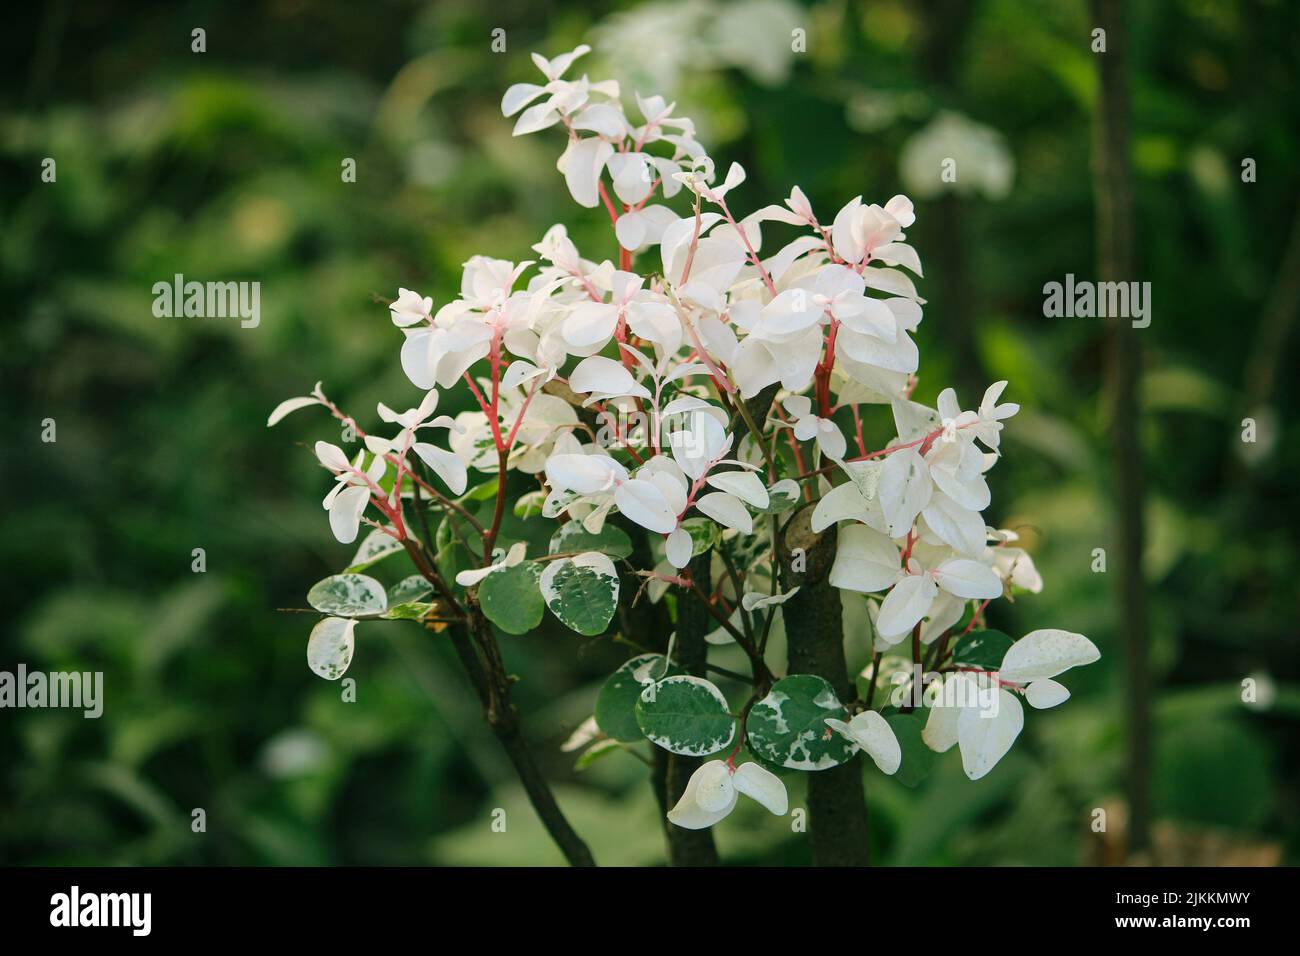 A closeup shot of the beautiful Breynia blooming in the garden Stock Photo